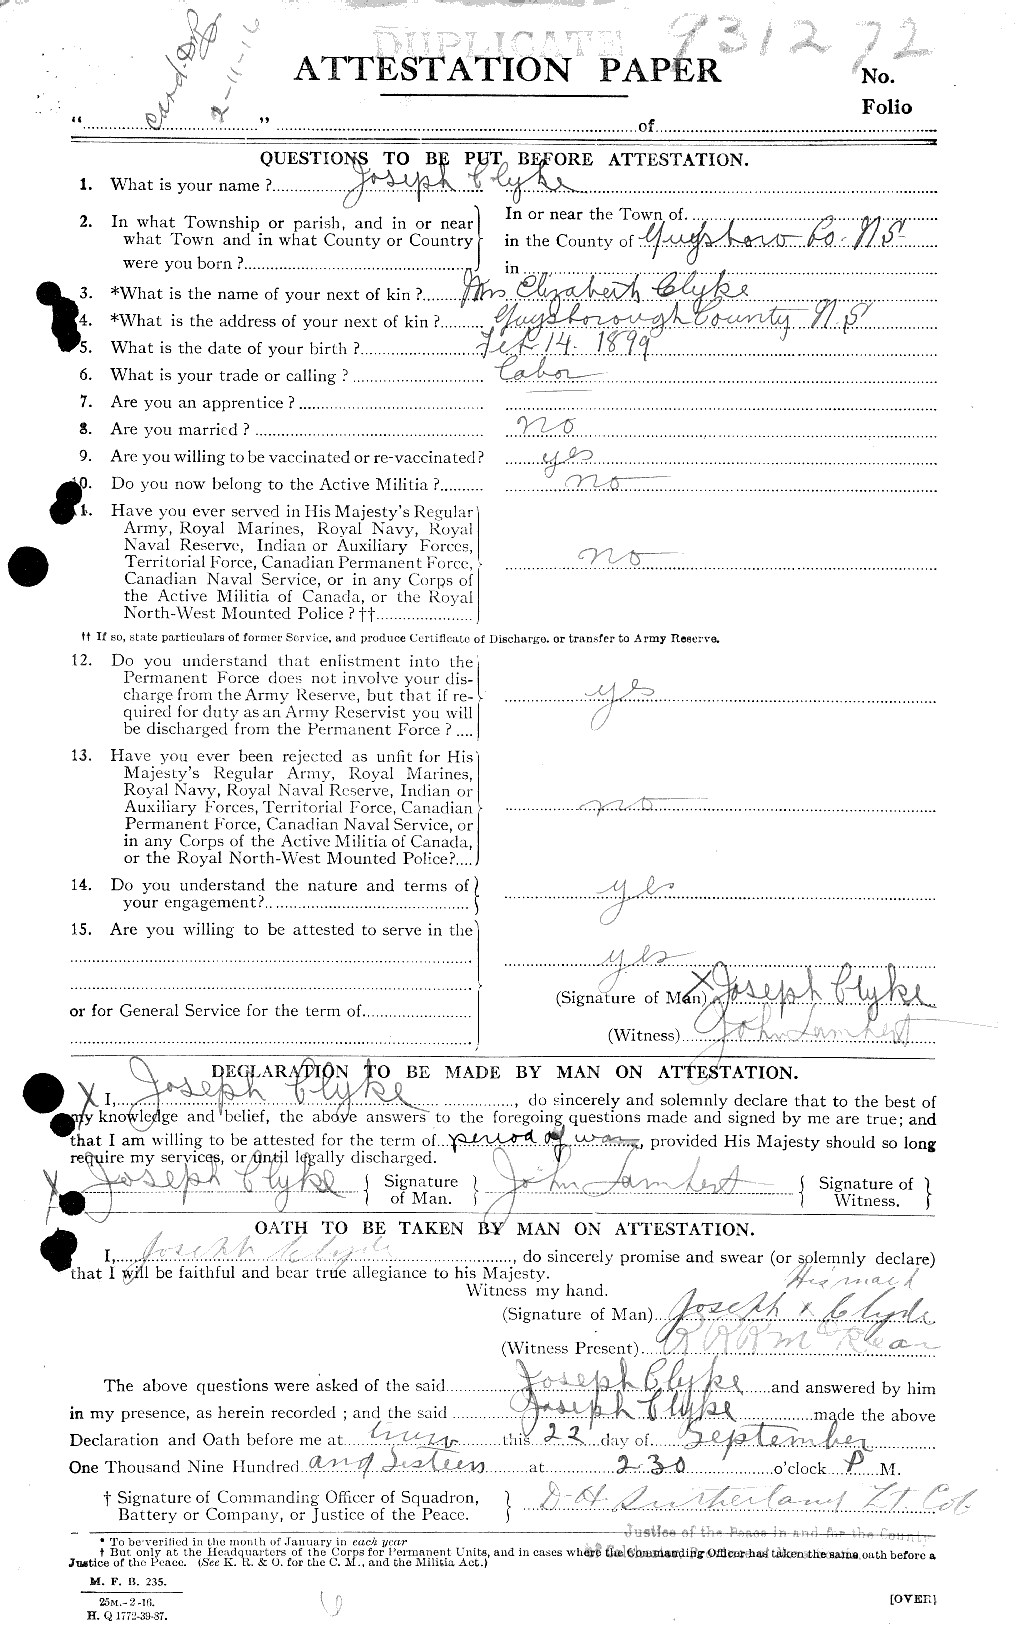 Dossiers du Personnel de la Première Guerre mondiale - CEC 026323a